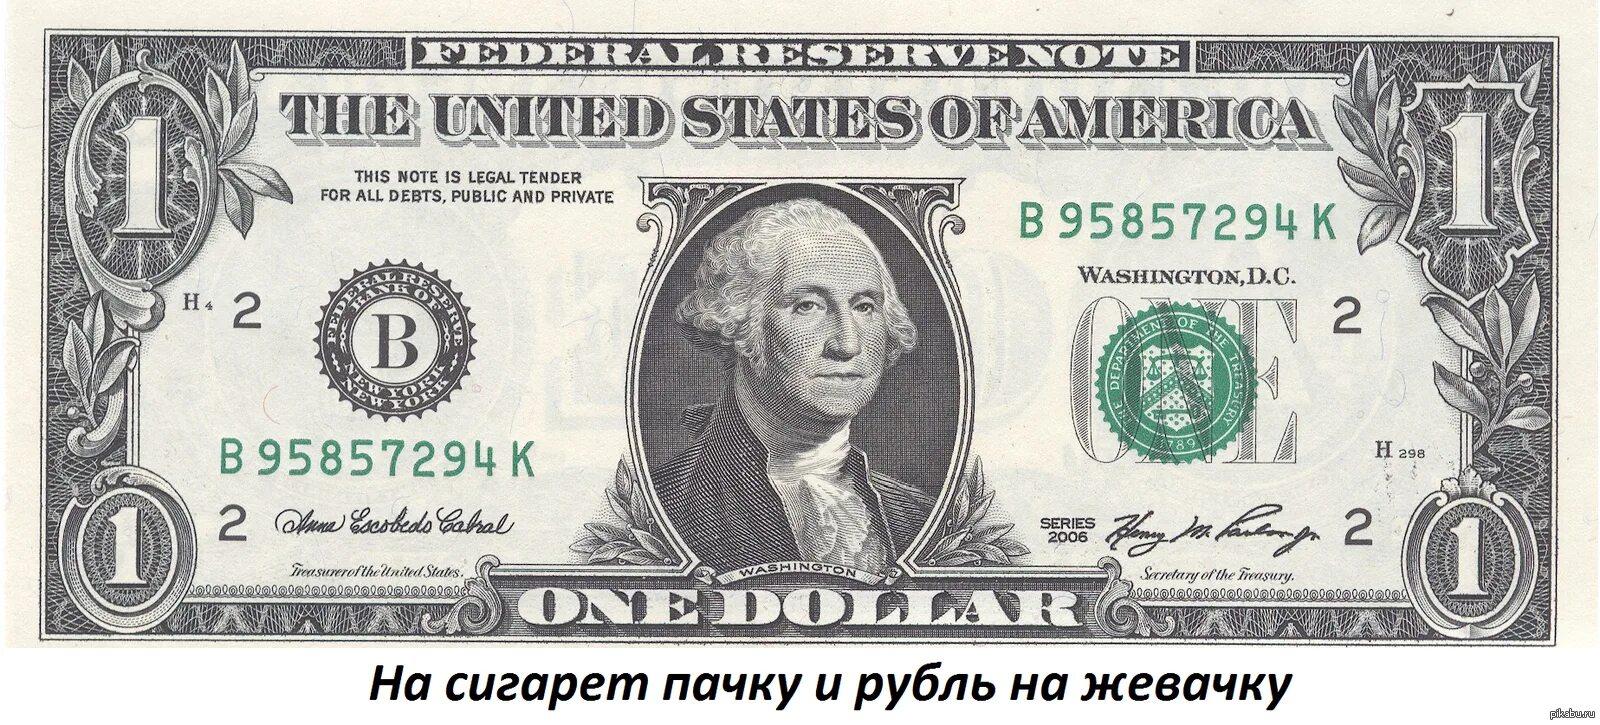 Однодолларовая купюра Джордж Вашингтон. Джордж Вашингтон на купюре. 1 Доллар США. Купюра 50 долларов США. 60 баксов в рублях